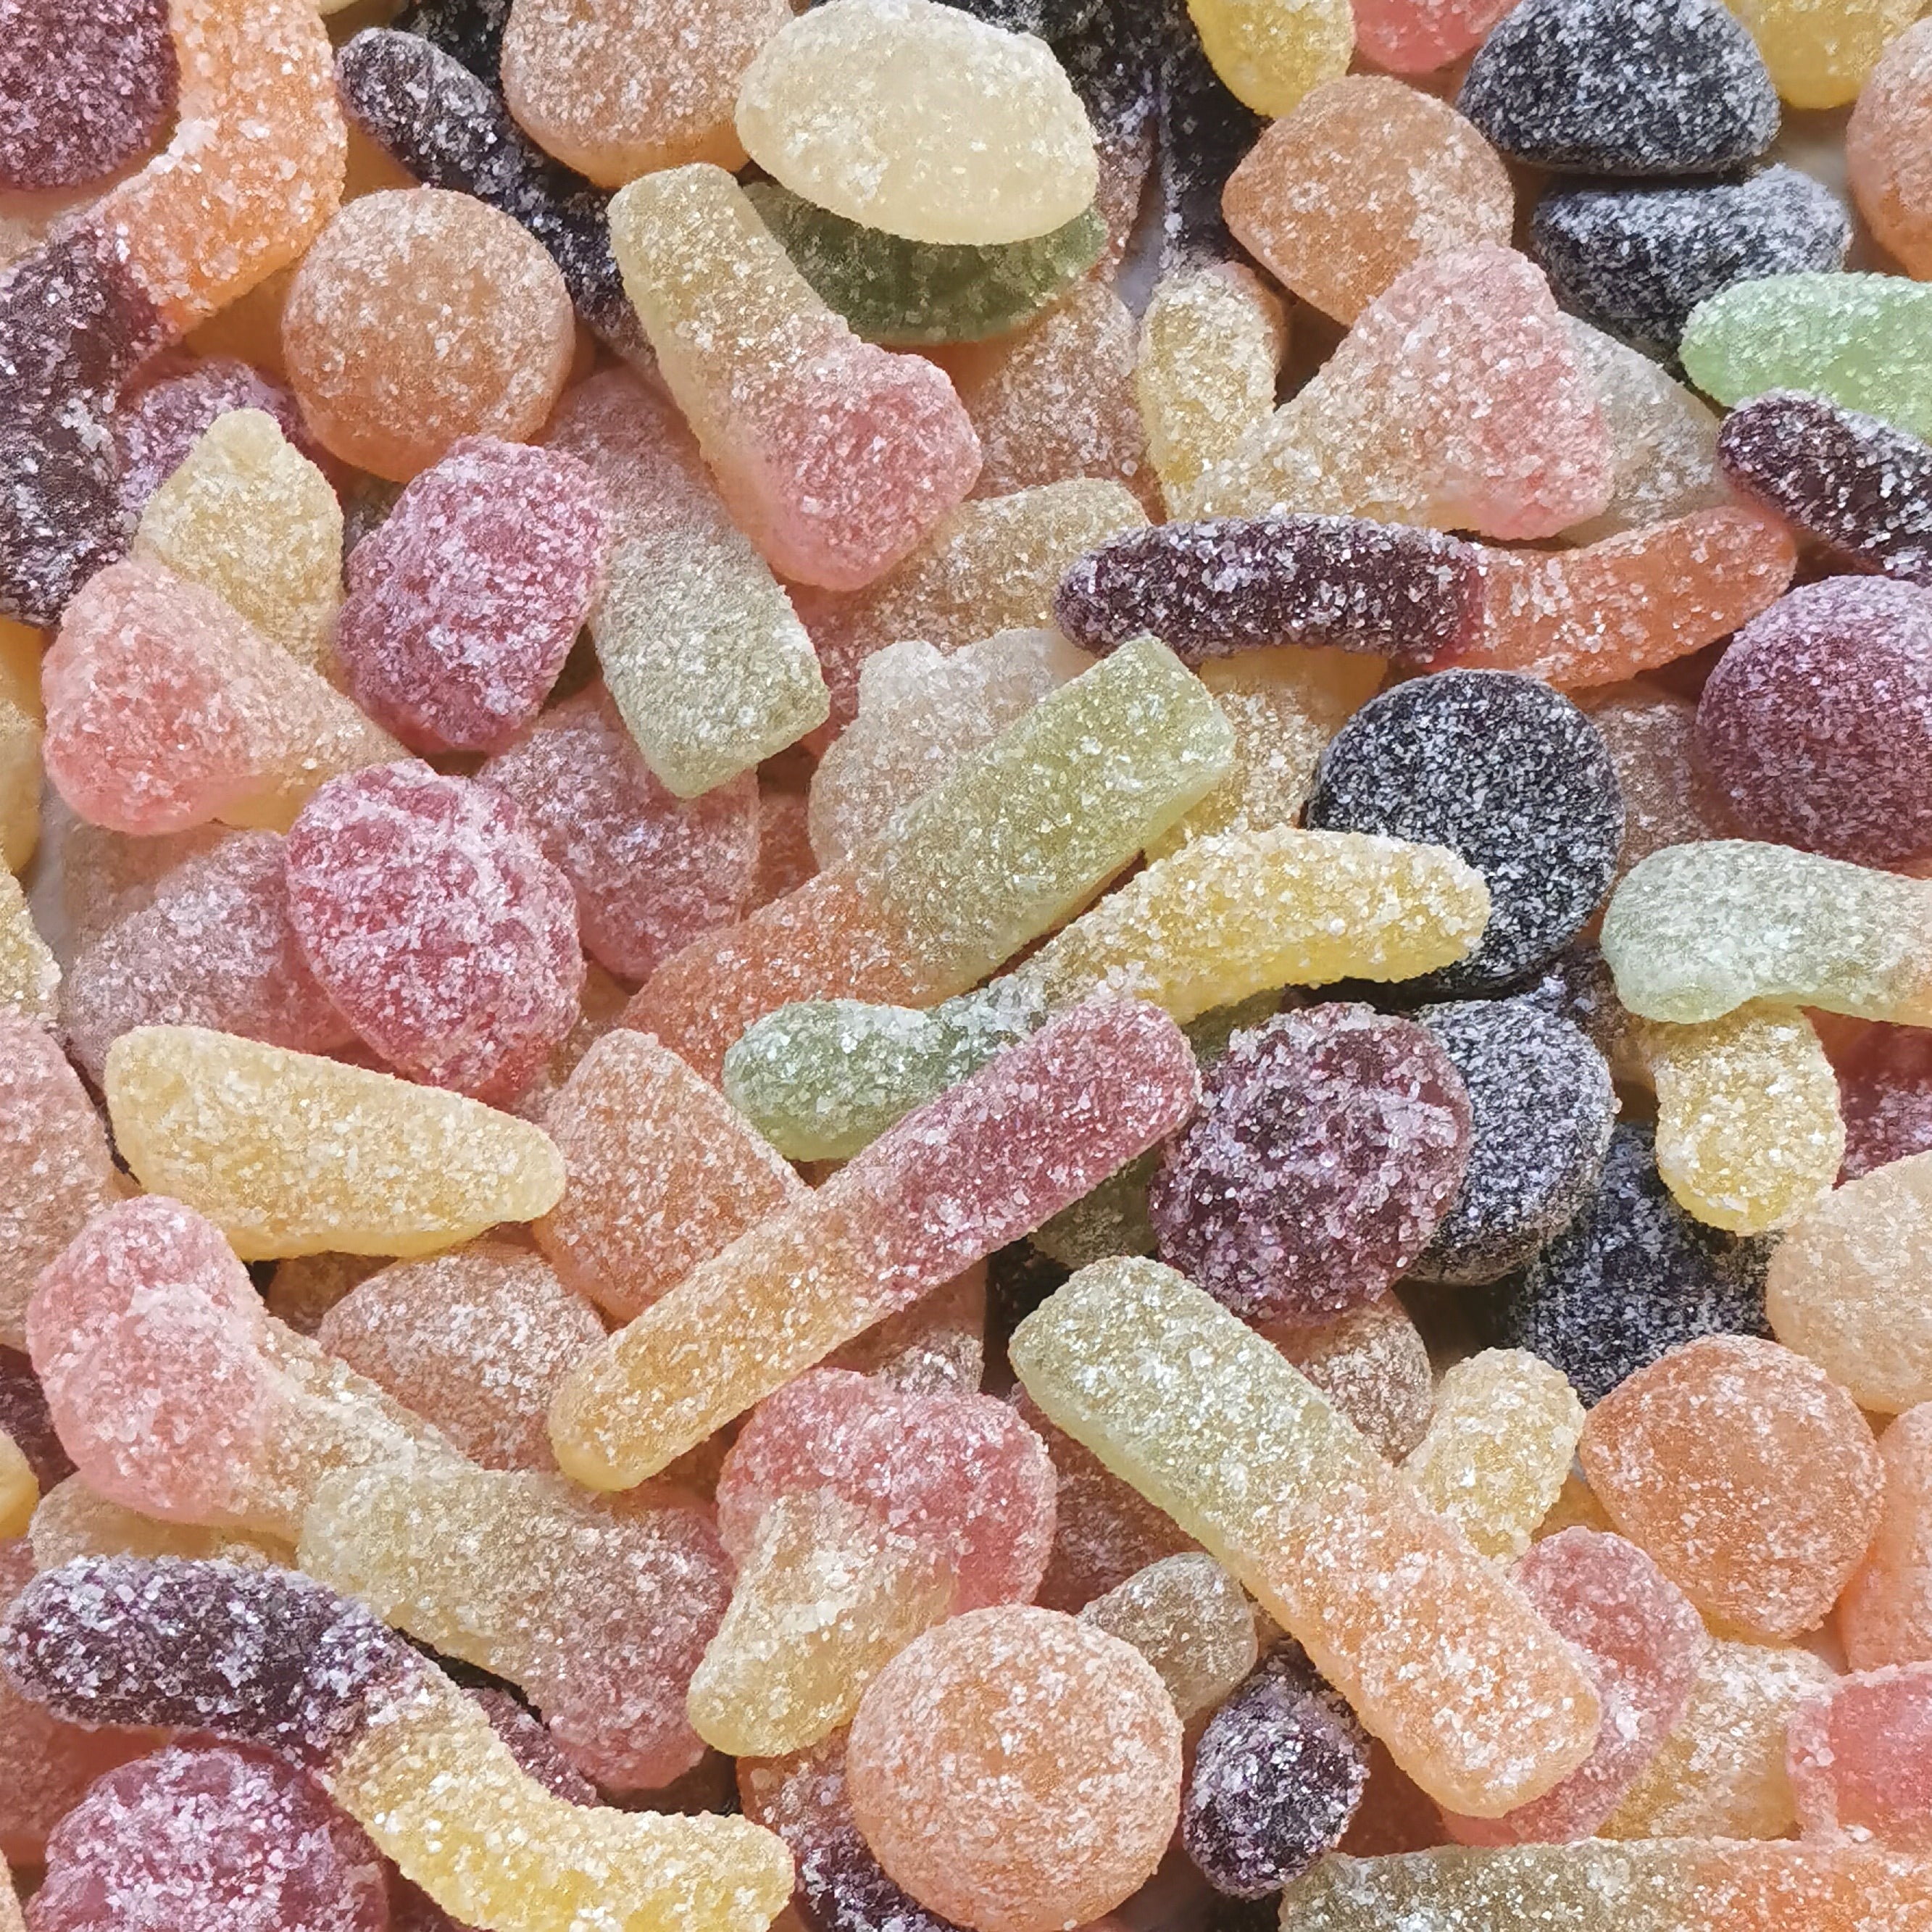 Koop de Vegan Zure Mix - Proef de Frisse Smaak van Bio Zuur Snoep bij Candy Freaks!